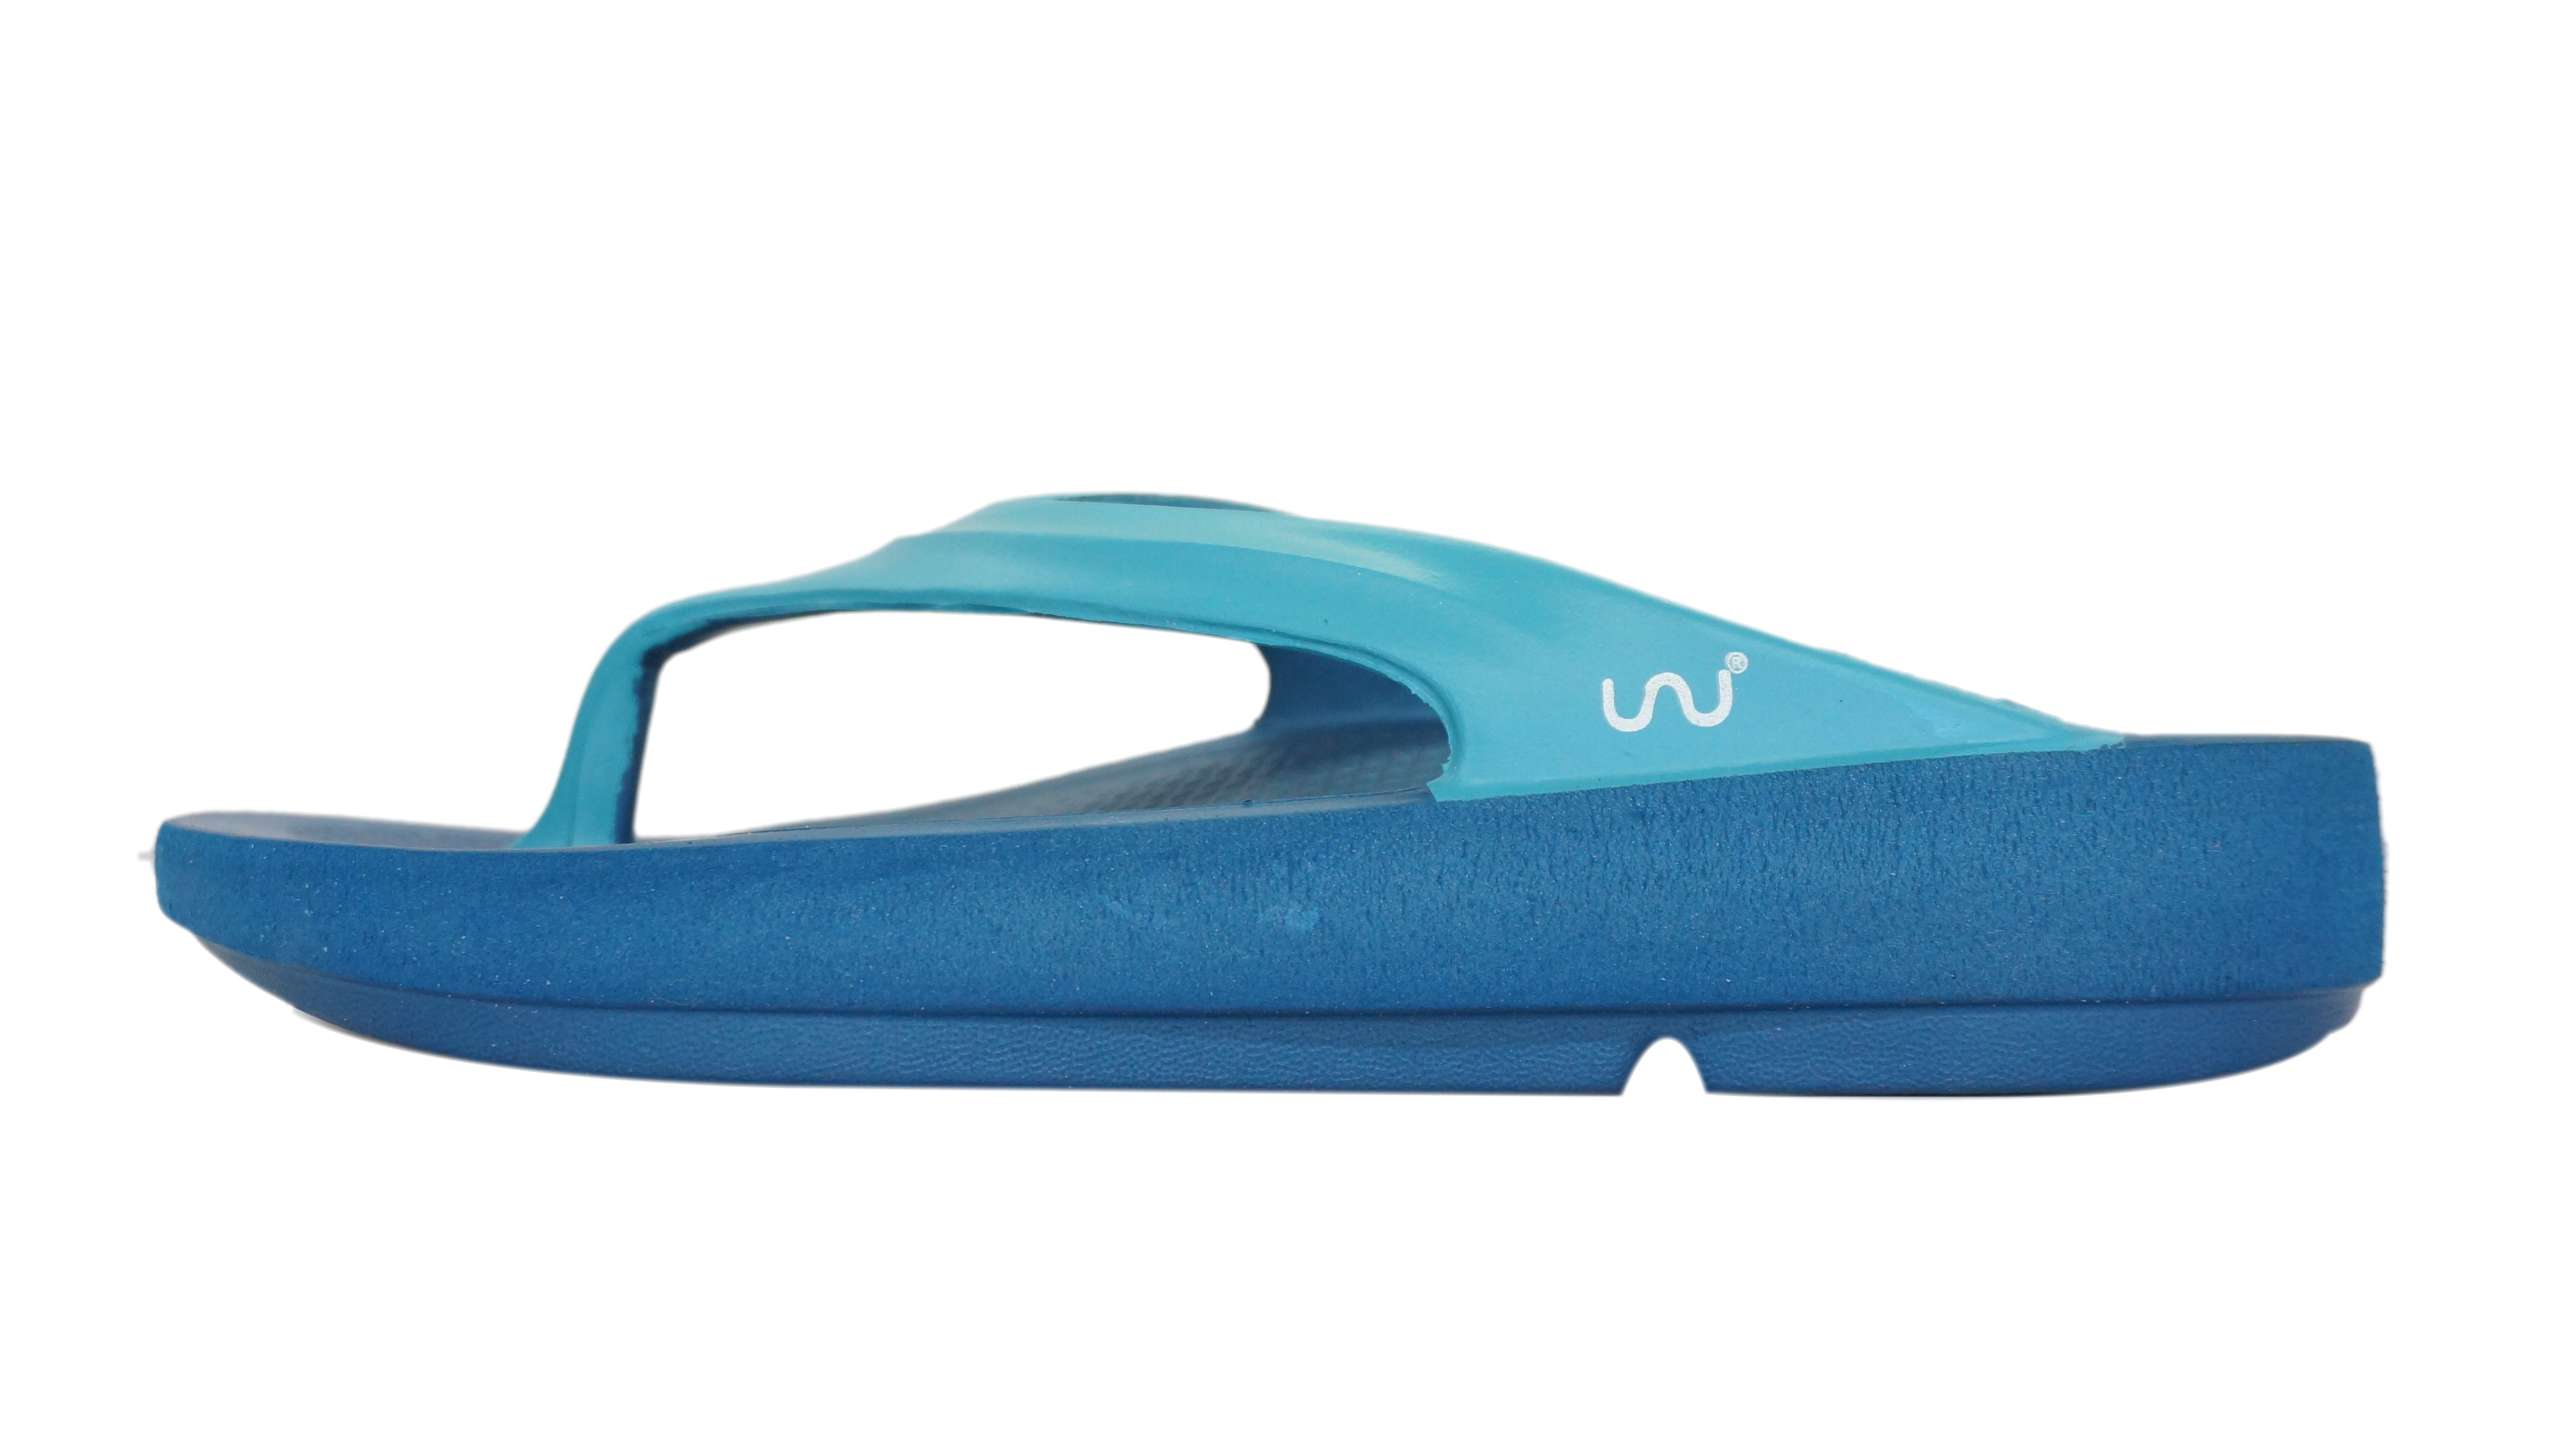 Doubleu Lite Women Slipper Comfortable & Light Weight Recovery Footwear (Blue + Aqua Women)